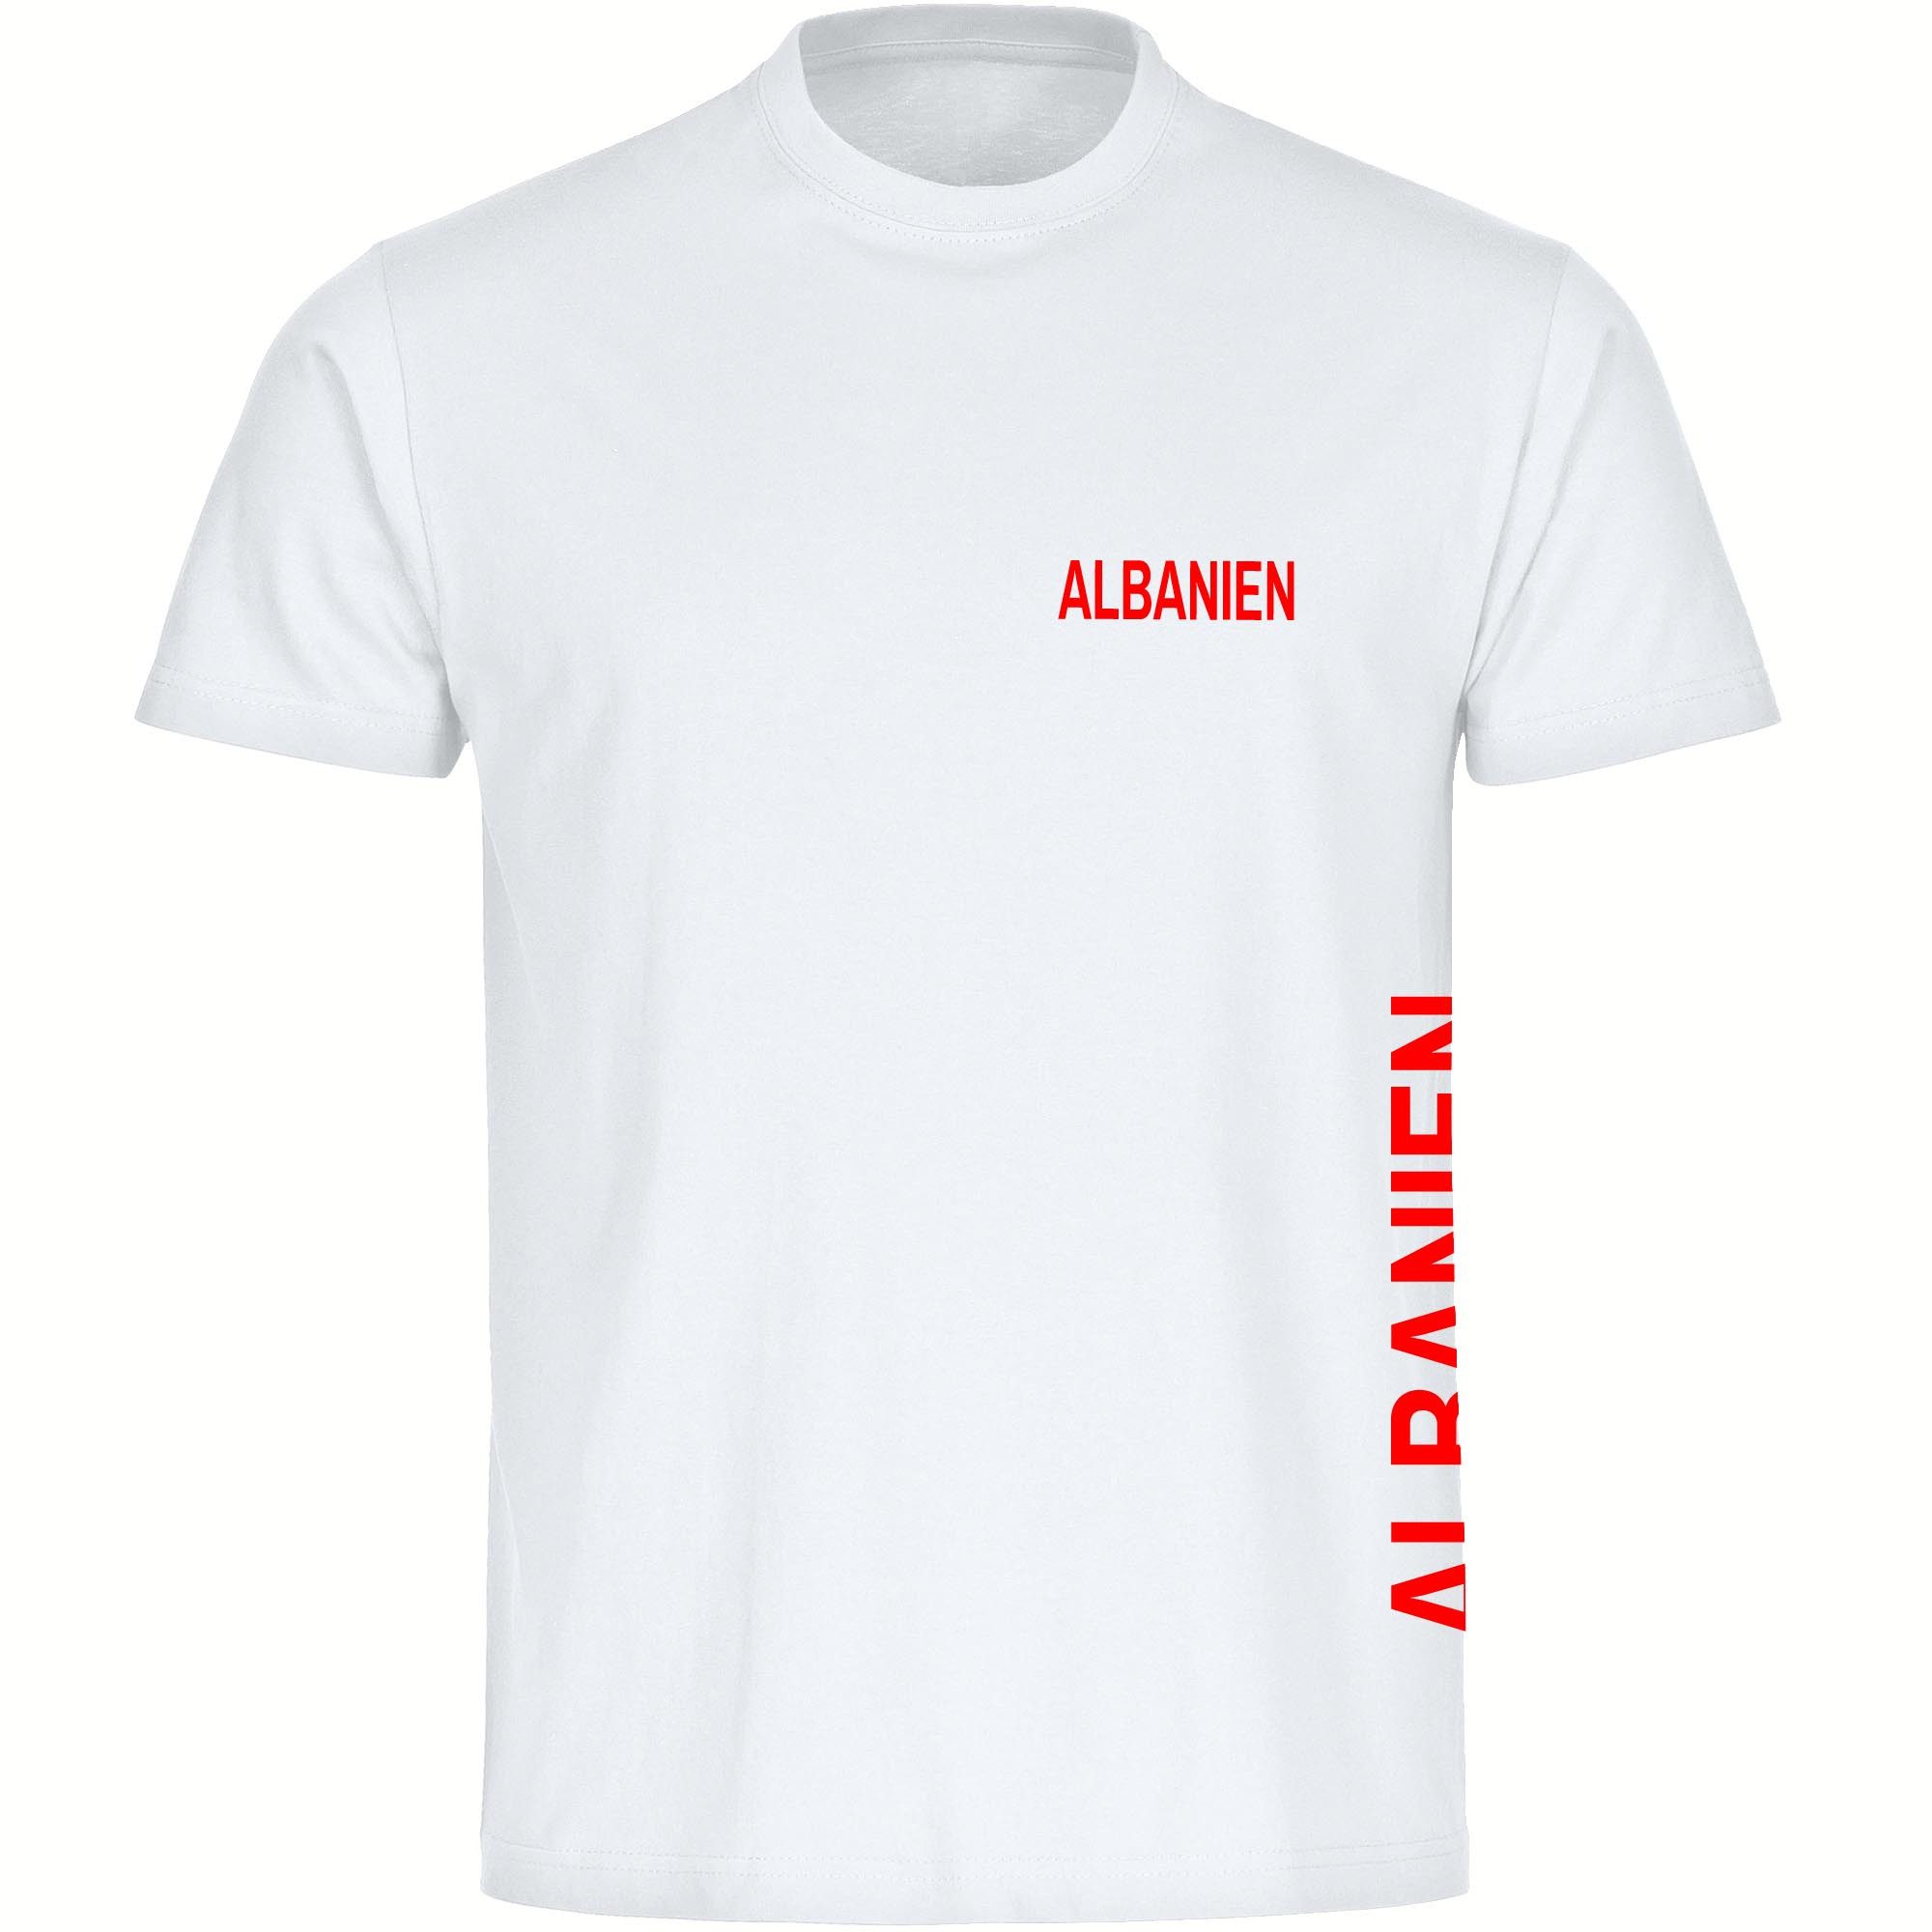 multifanshop T-Shirt Herren Albanien - Brust & Seite - Männer